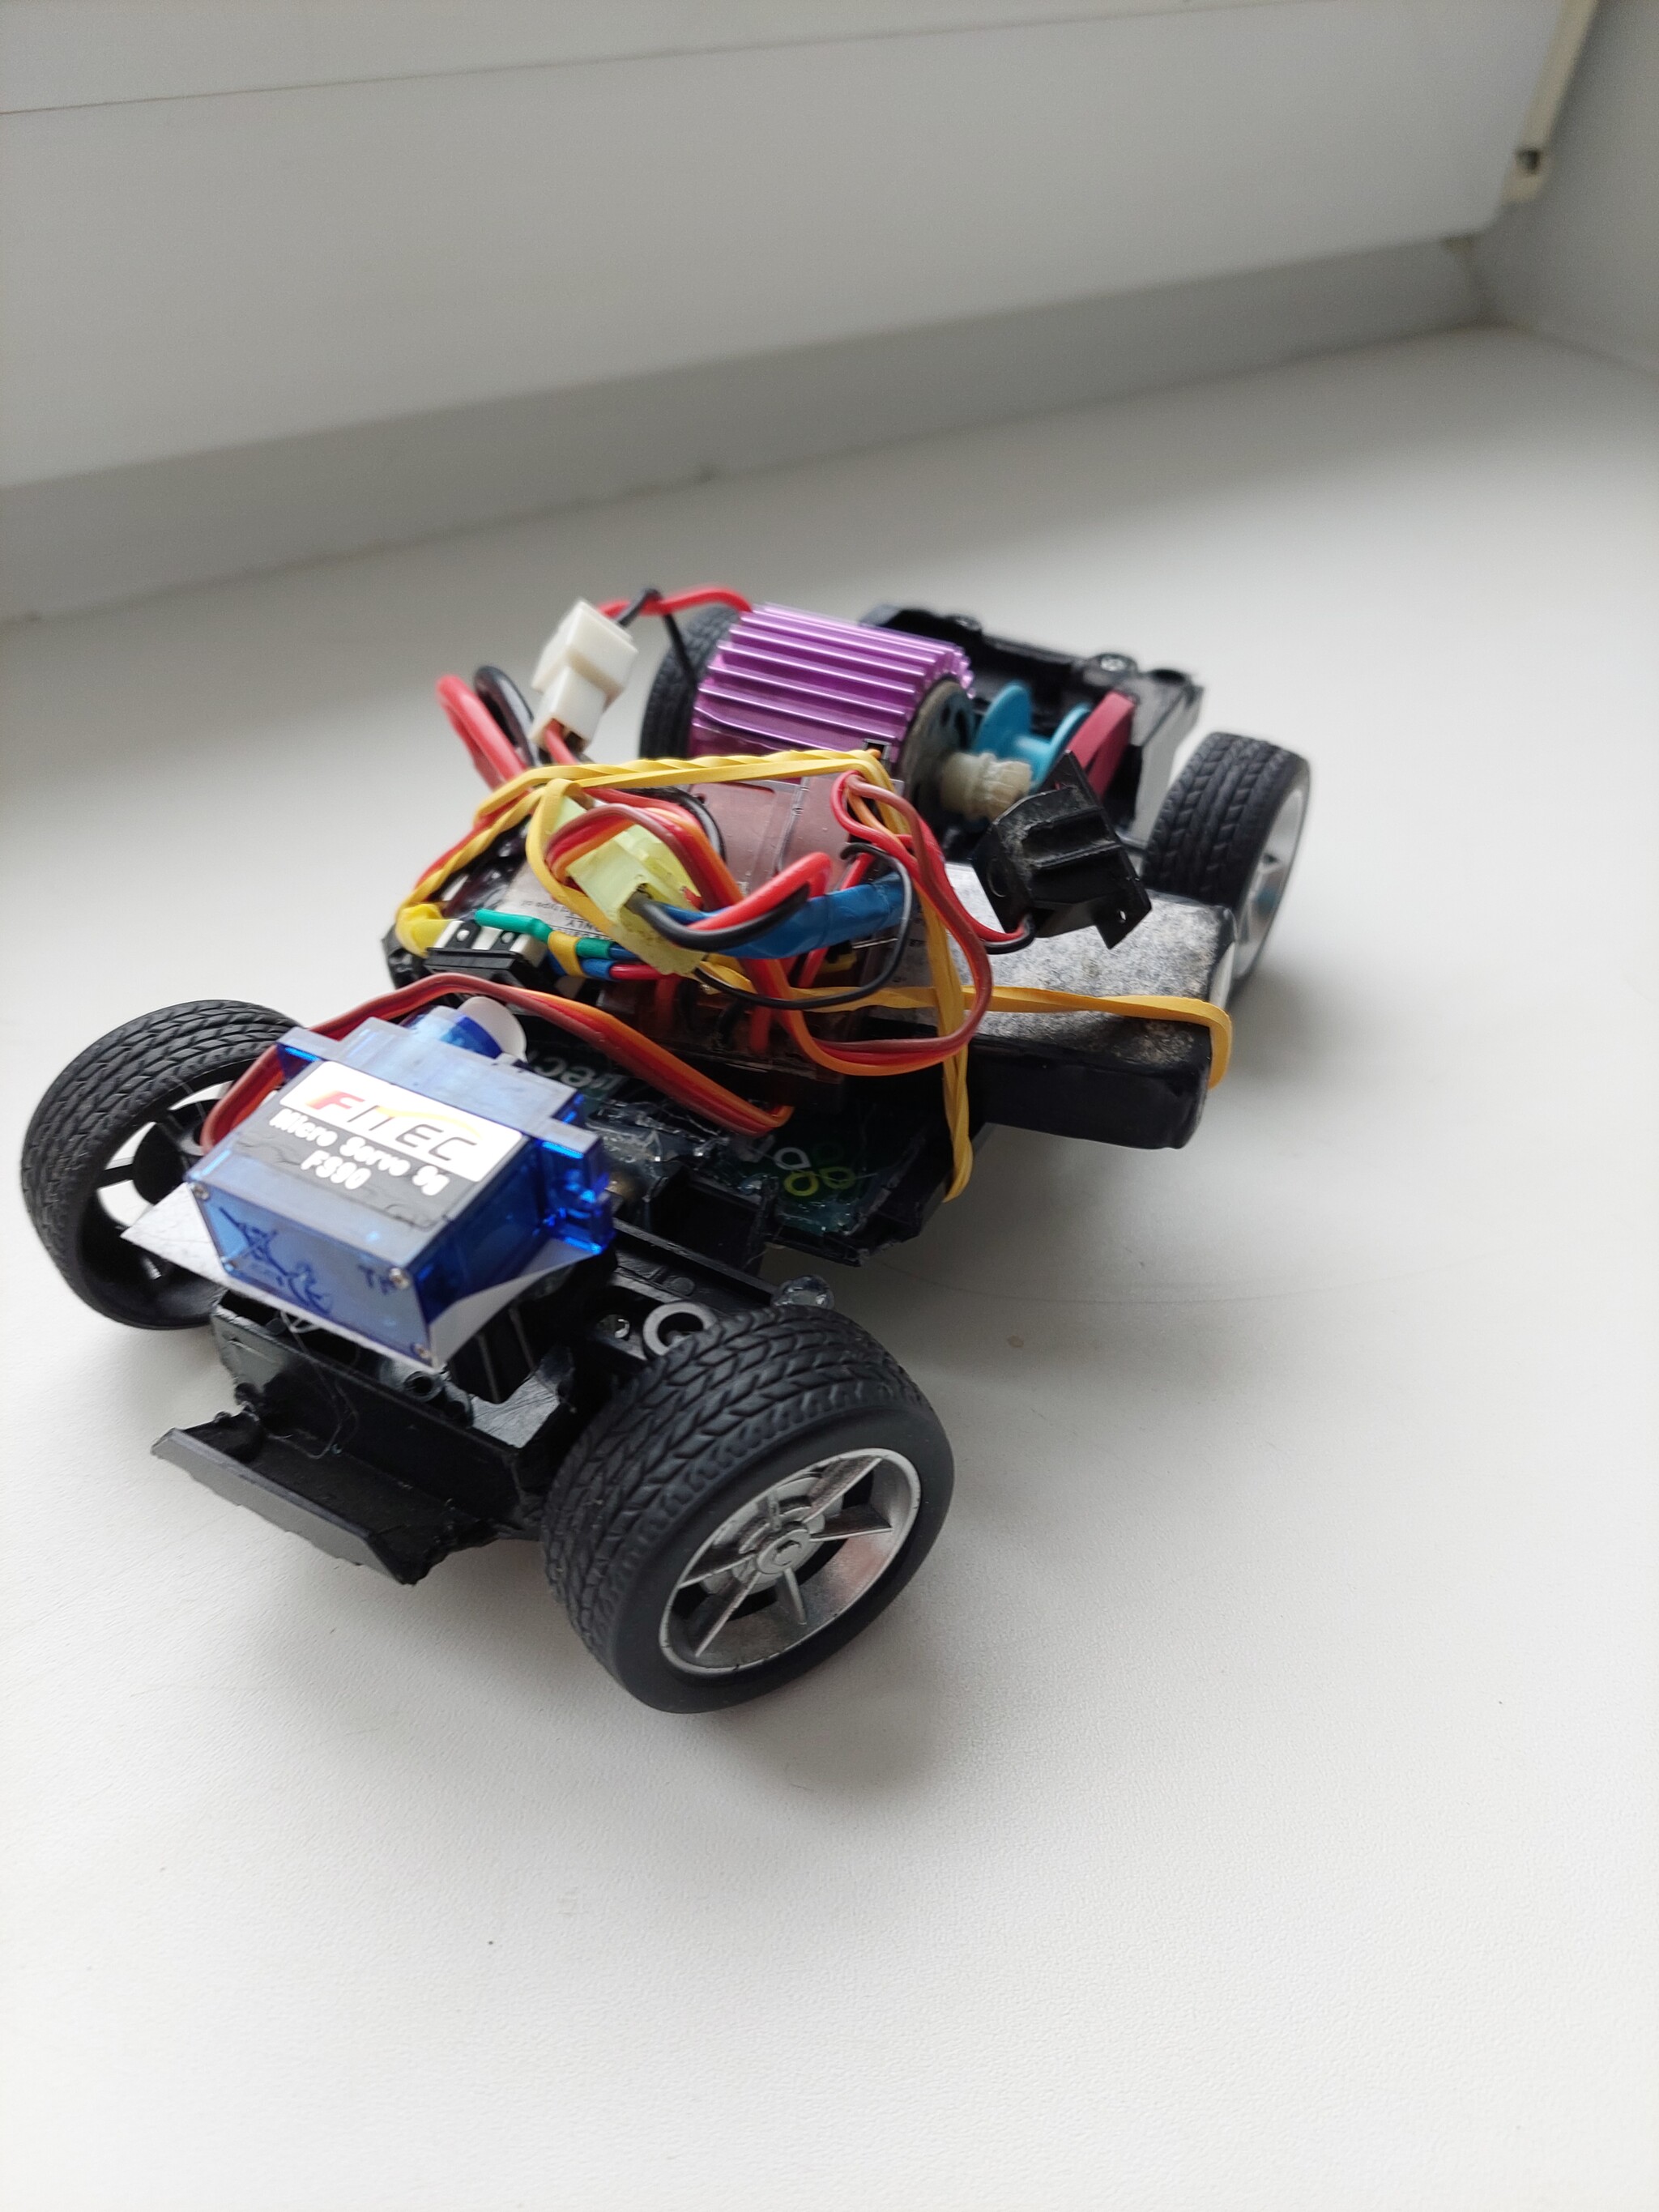 Как сделать машину для детей на резиномоторе!.. — Video | VK